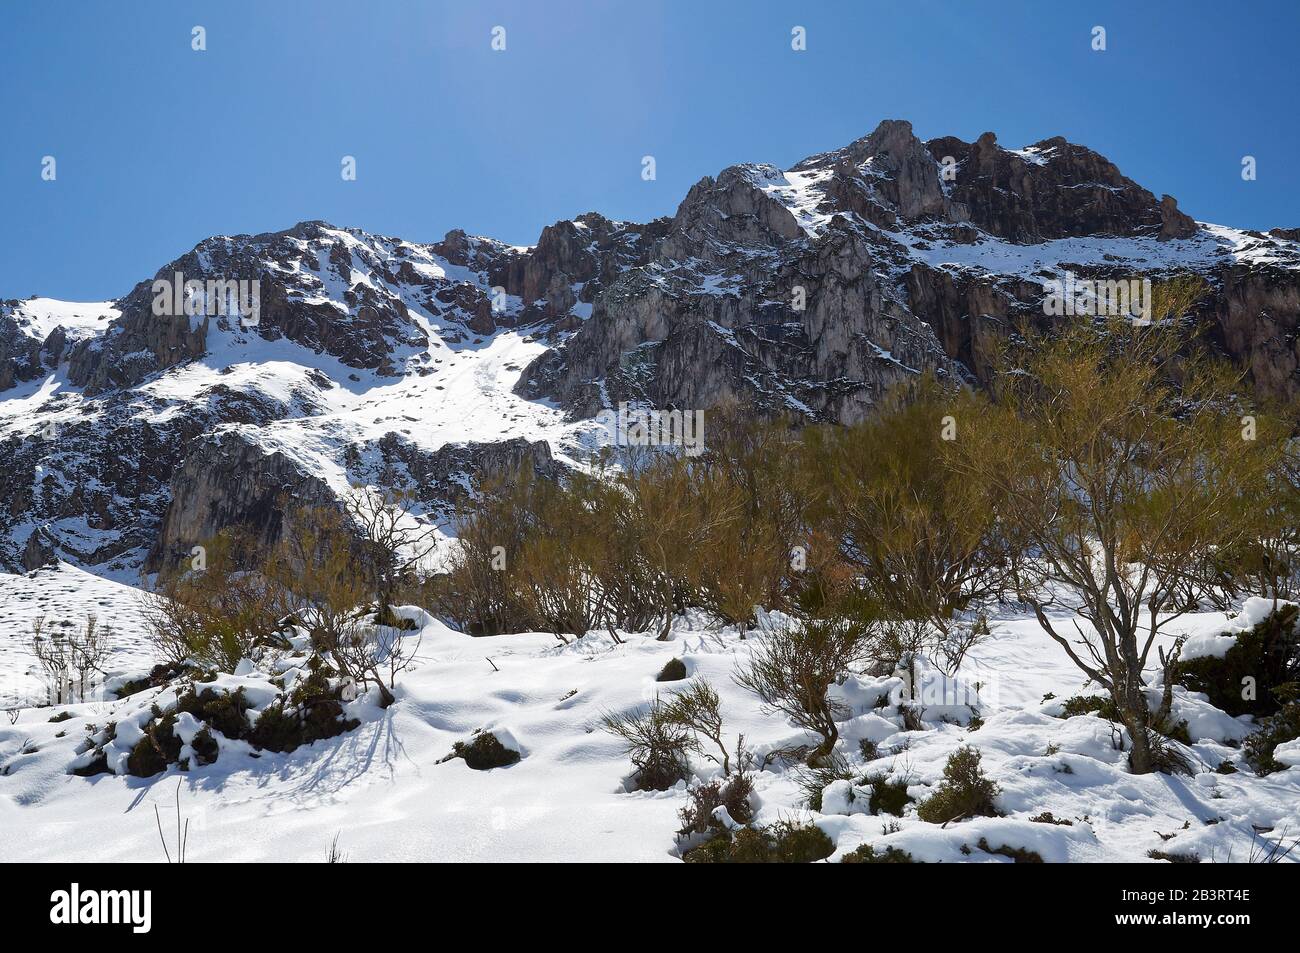 Paysage enneigé d'hiver avec neige fraîche immaculée dans une journée ensoleillée sur le sentier de randonnée PR.AS-15 (Valle del Lago, Soriedo Natural Park, Asturies, Espagne) Banque D'Images